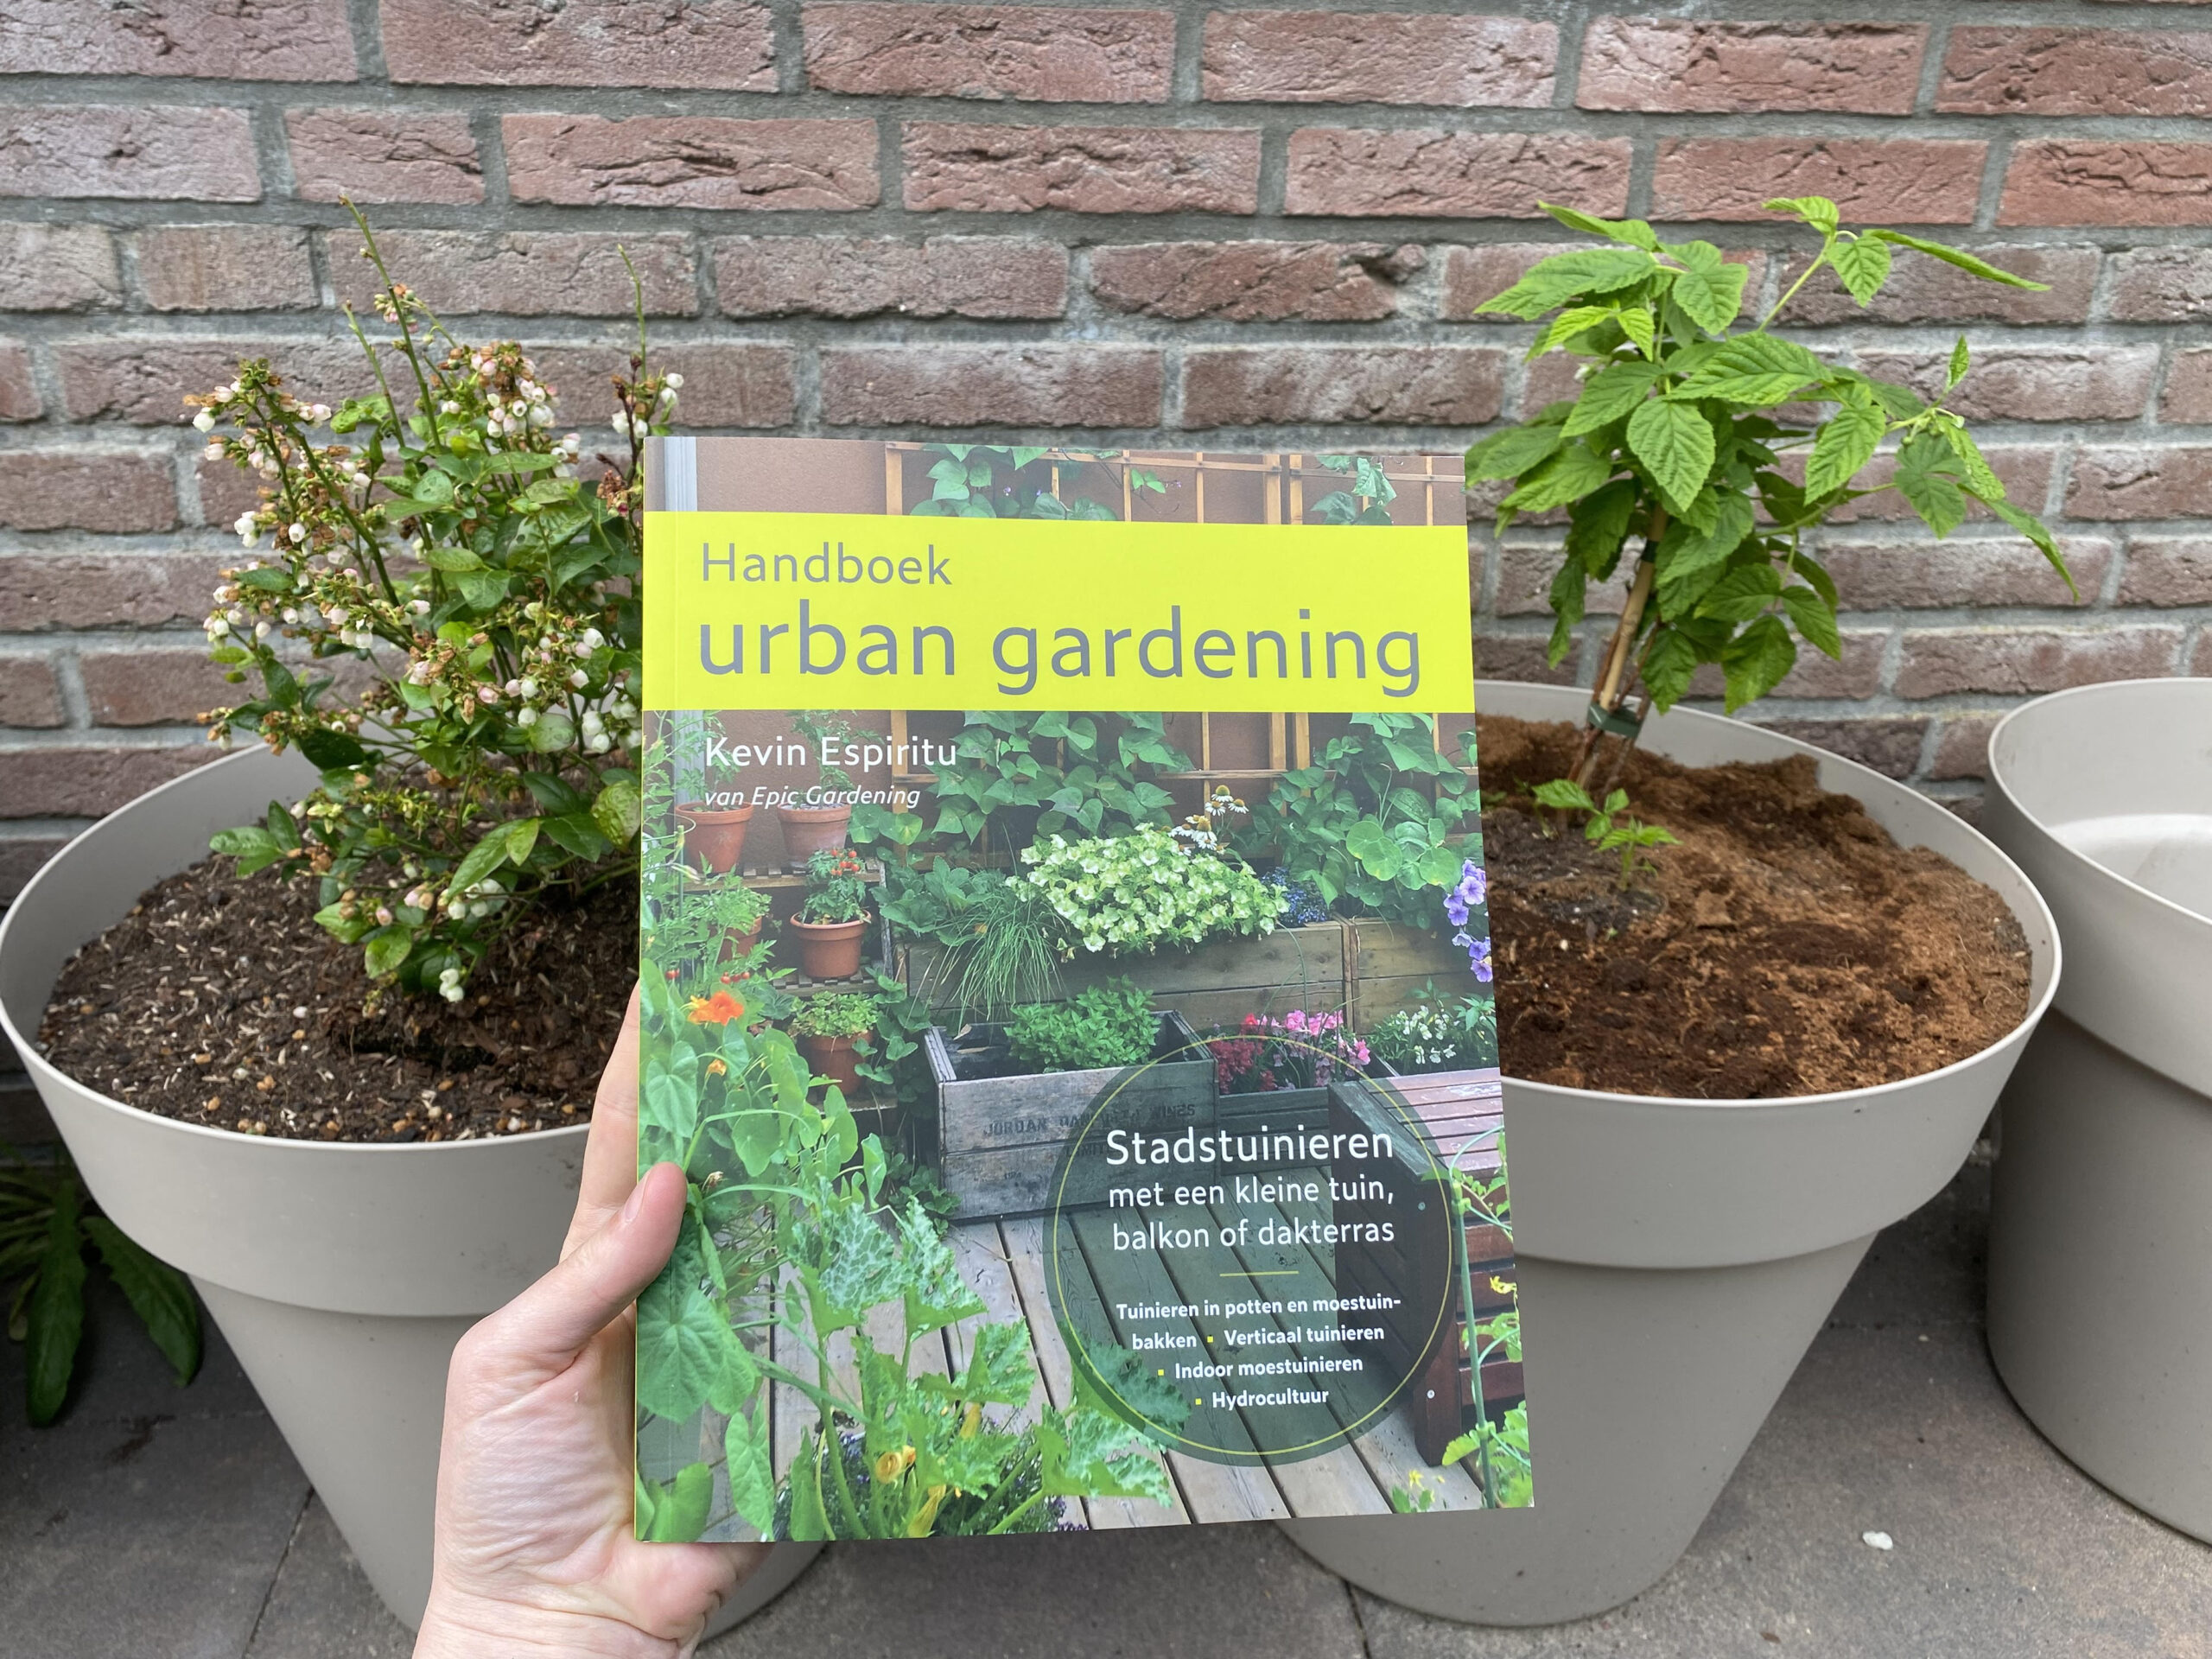 Handboek urban gardening, voor eenieder die wilt stadstuinieren